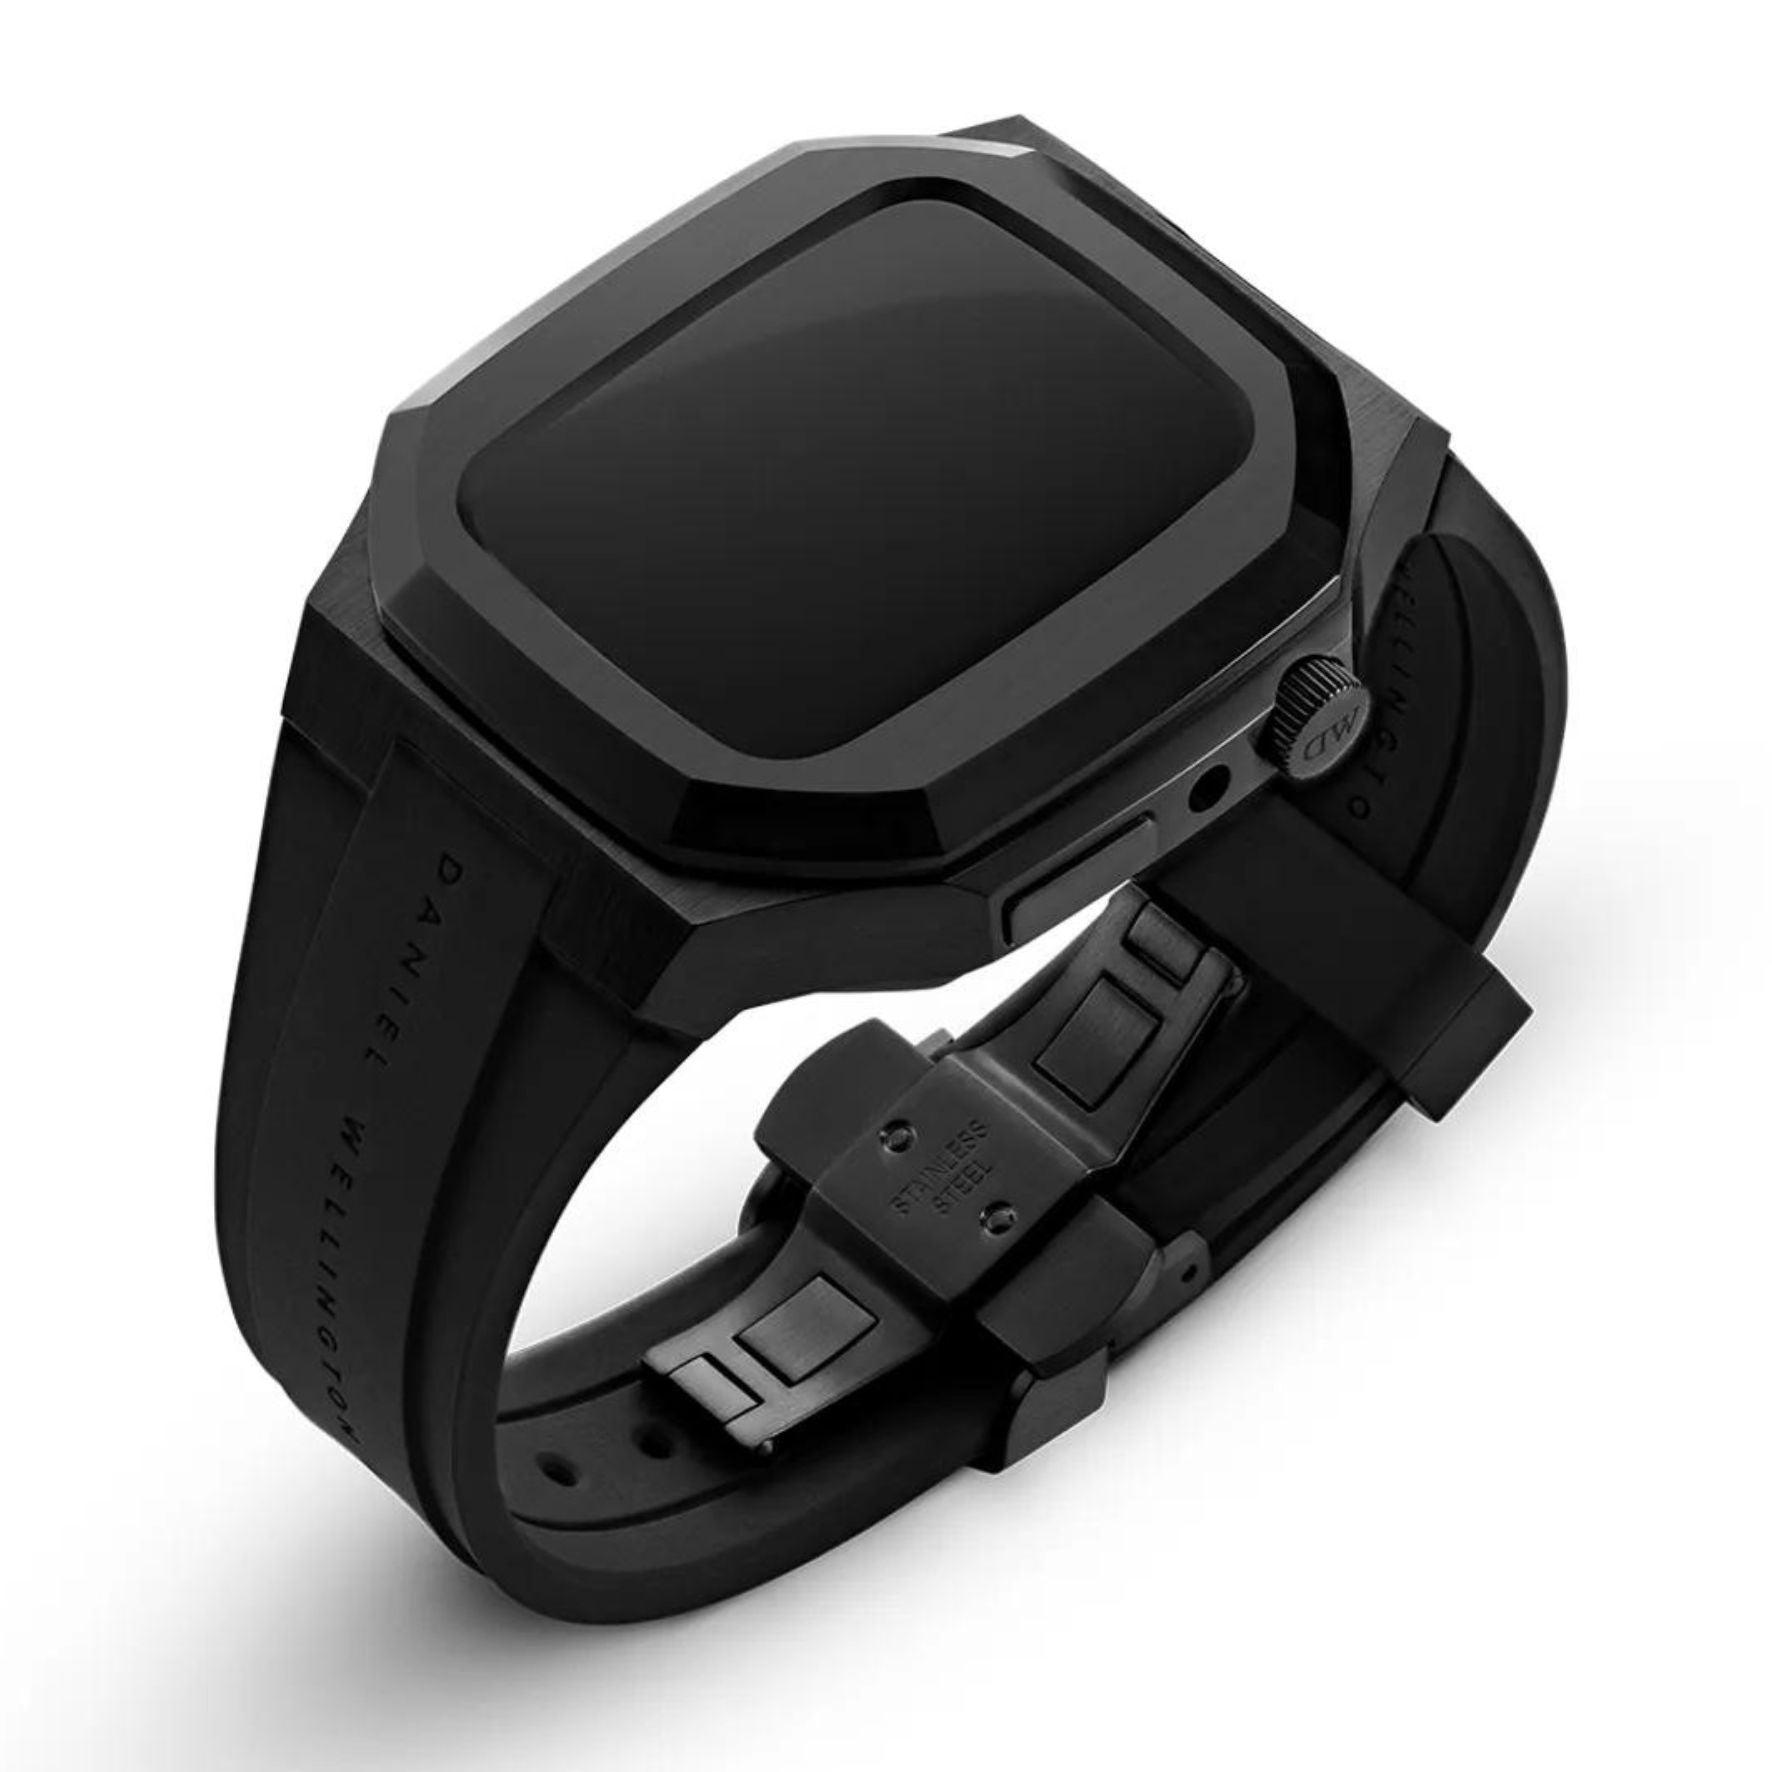 Θήκη smartwatch daniel wellington dw01200003 συμβατή με Apple Watch Series 6, 5, 4 και Apple Watch SE σε μαύρο χρώμα με με μαύρο καουτσούκ λουράκι και τετράγωνο σχήμα.